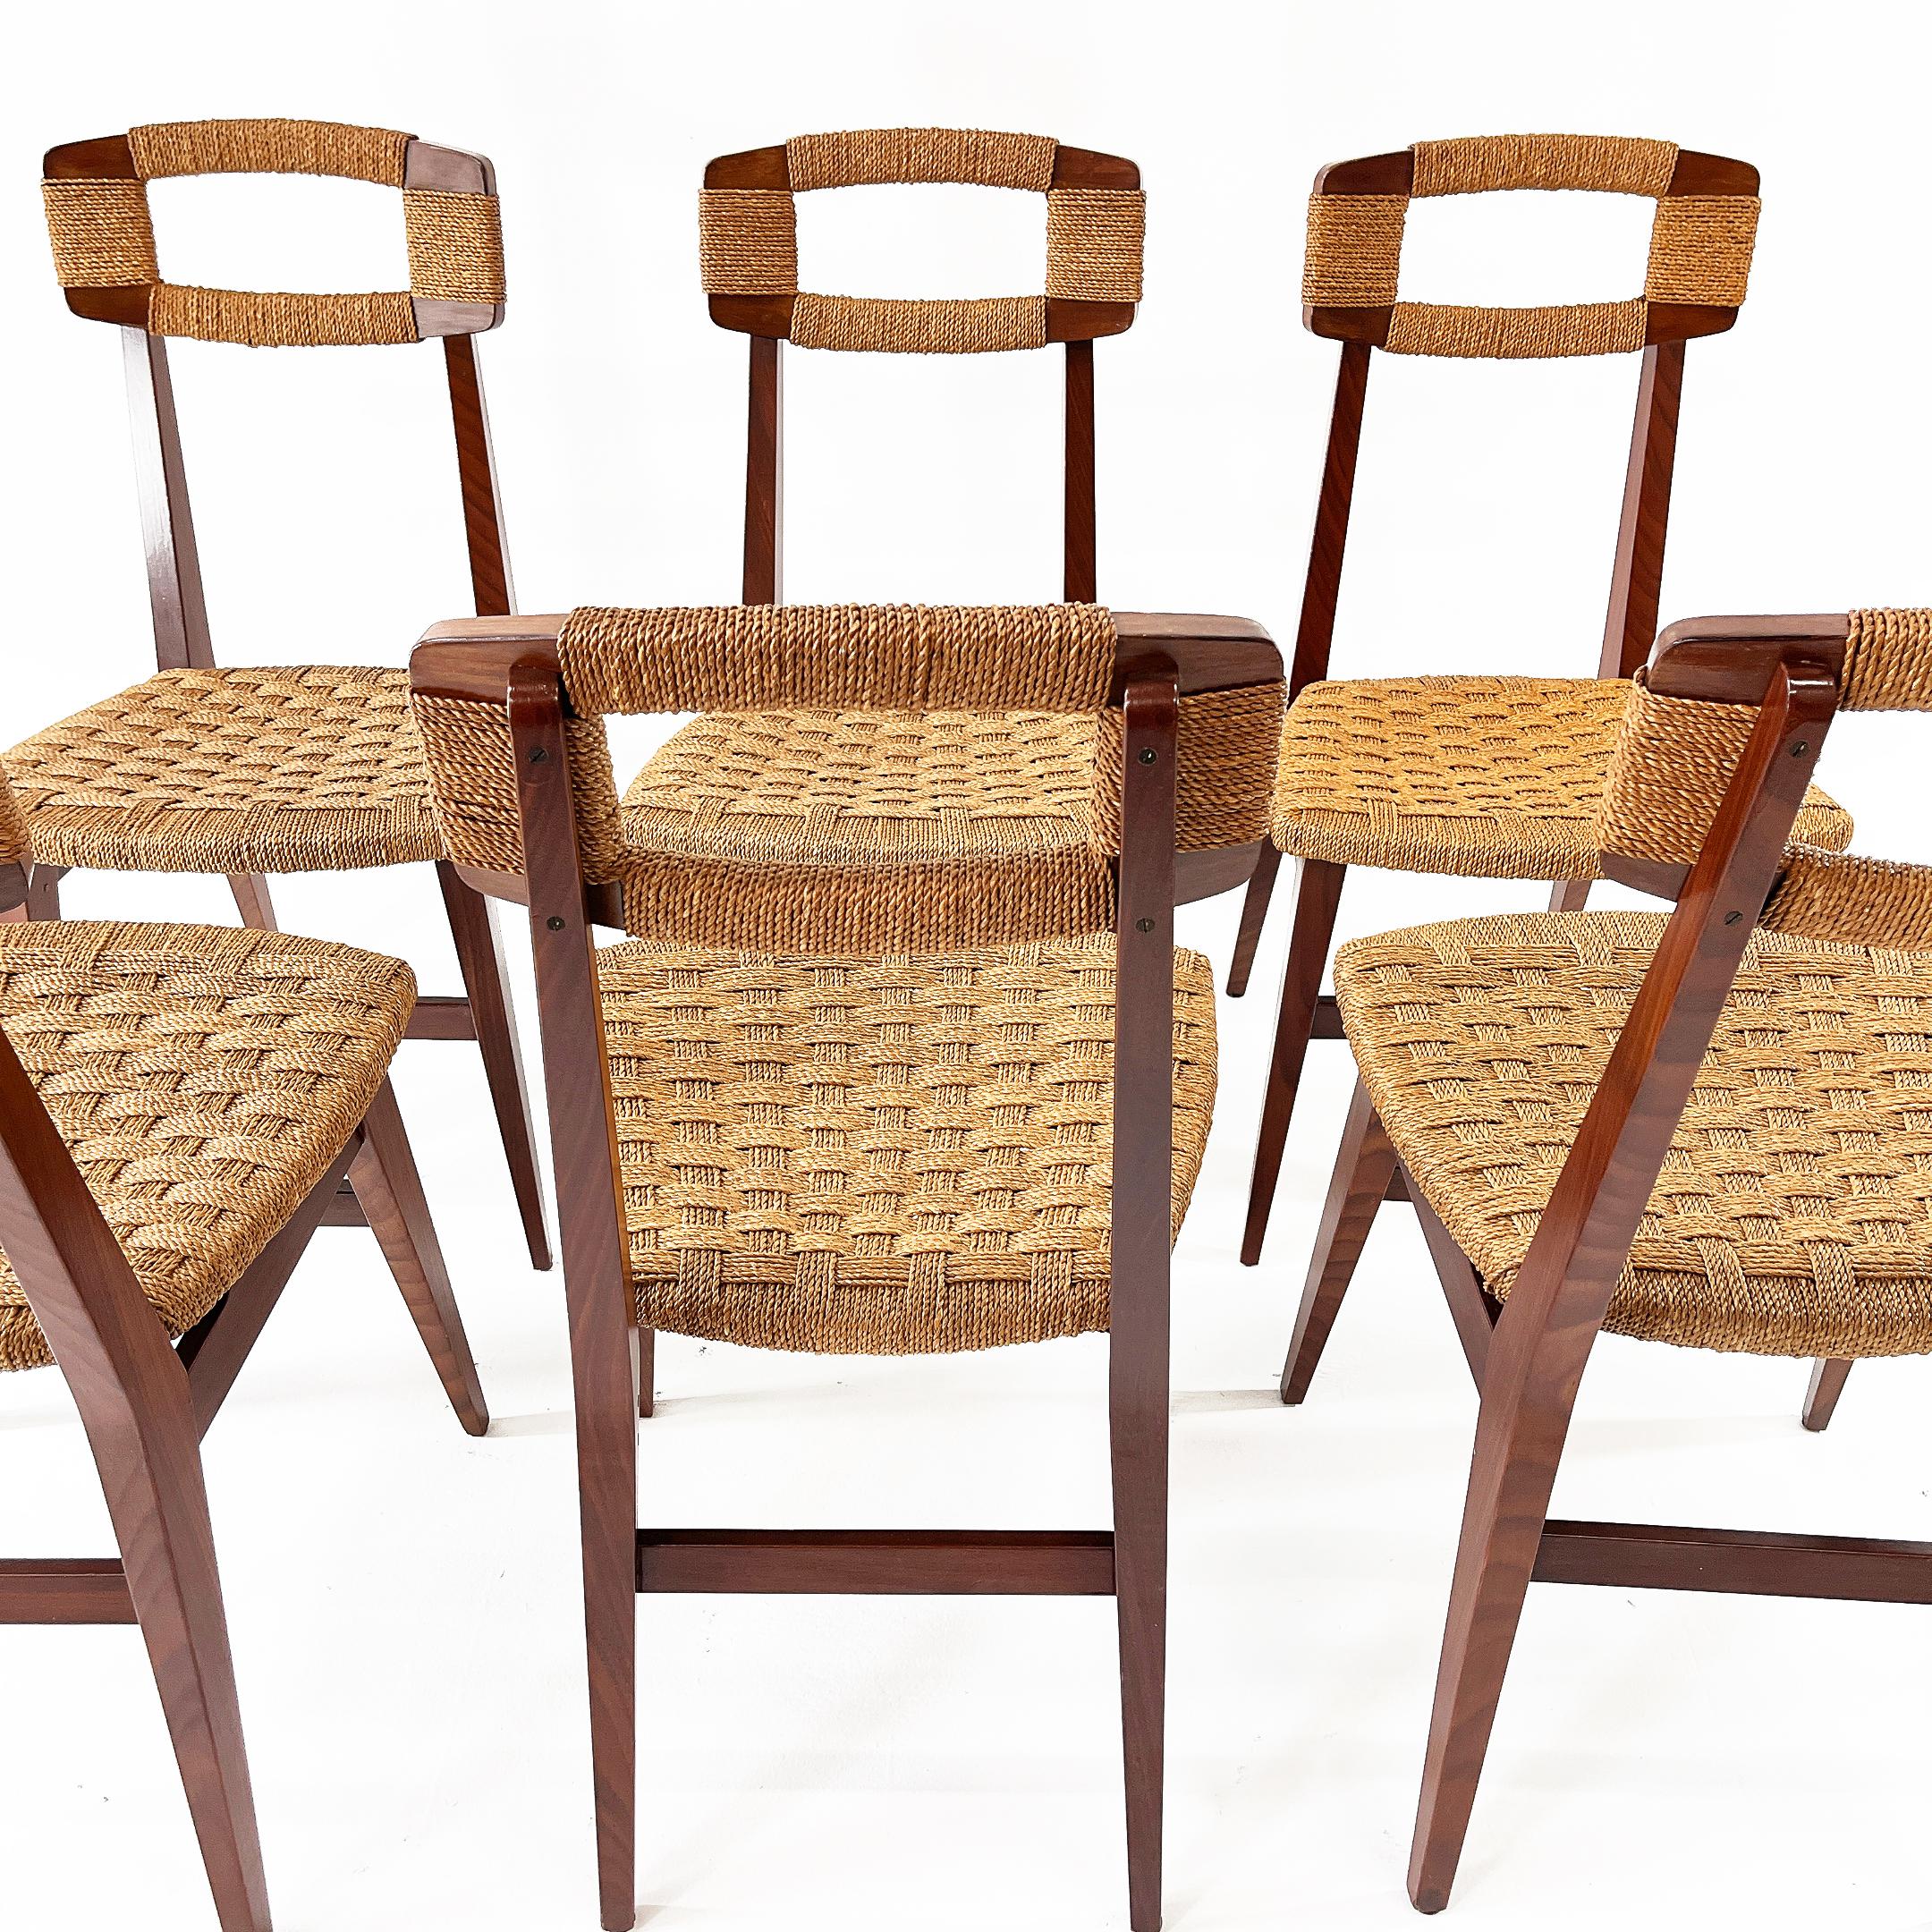 Rares et magnifiques six chaises danoises. Bois, corde de paille tressée. Danemark Années 1950.